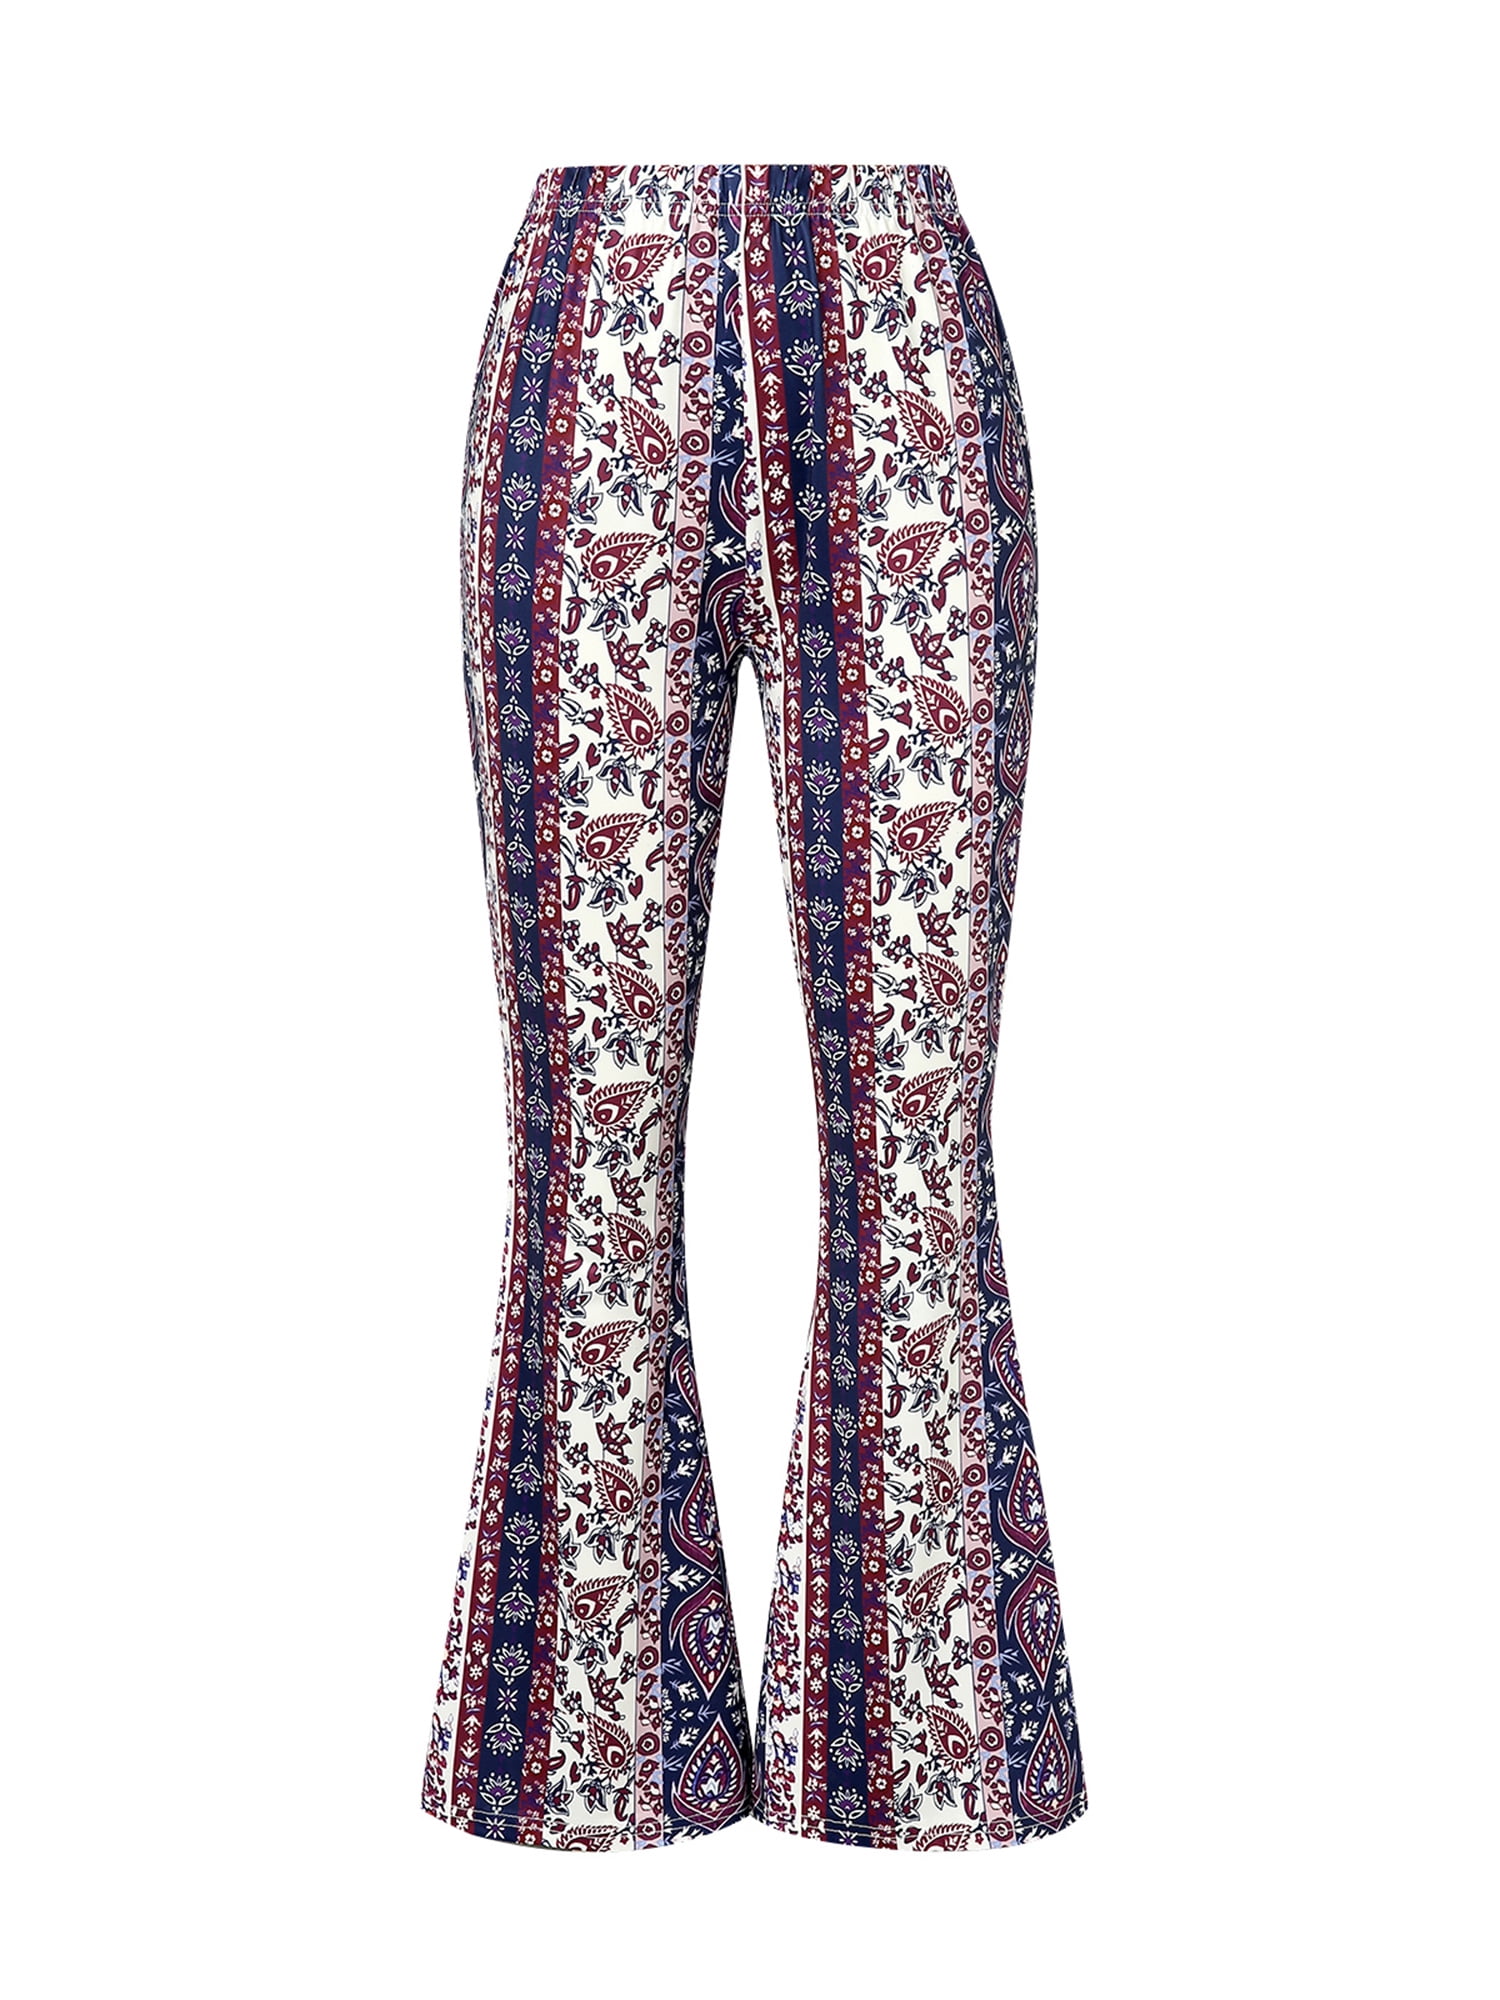 floral flare pants 🖤 y2k does 70s floral flare pants - Depop